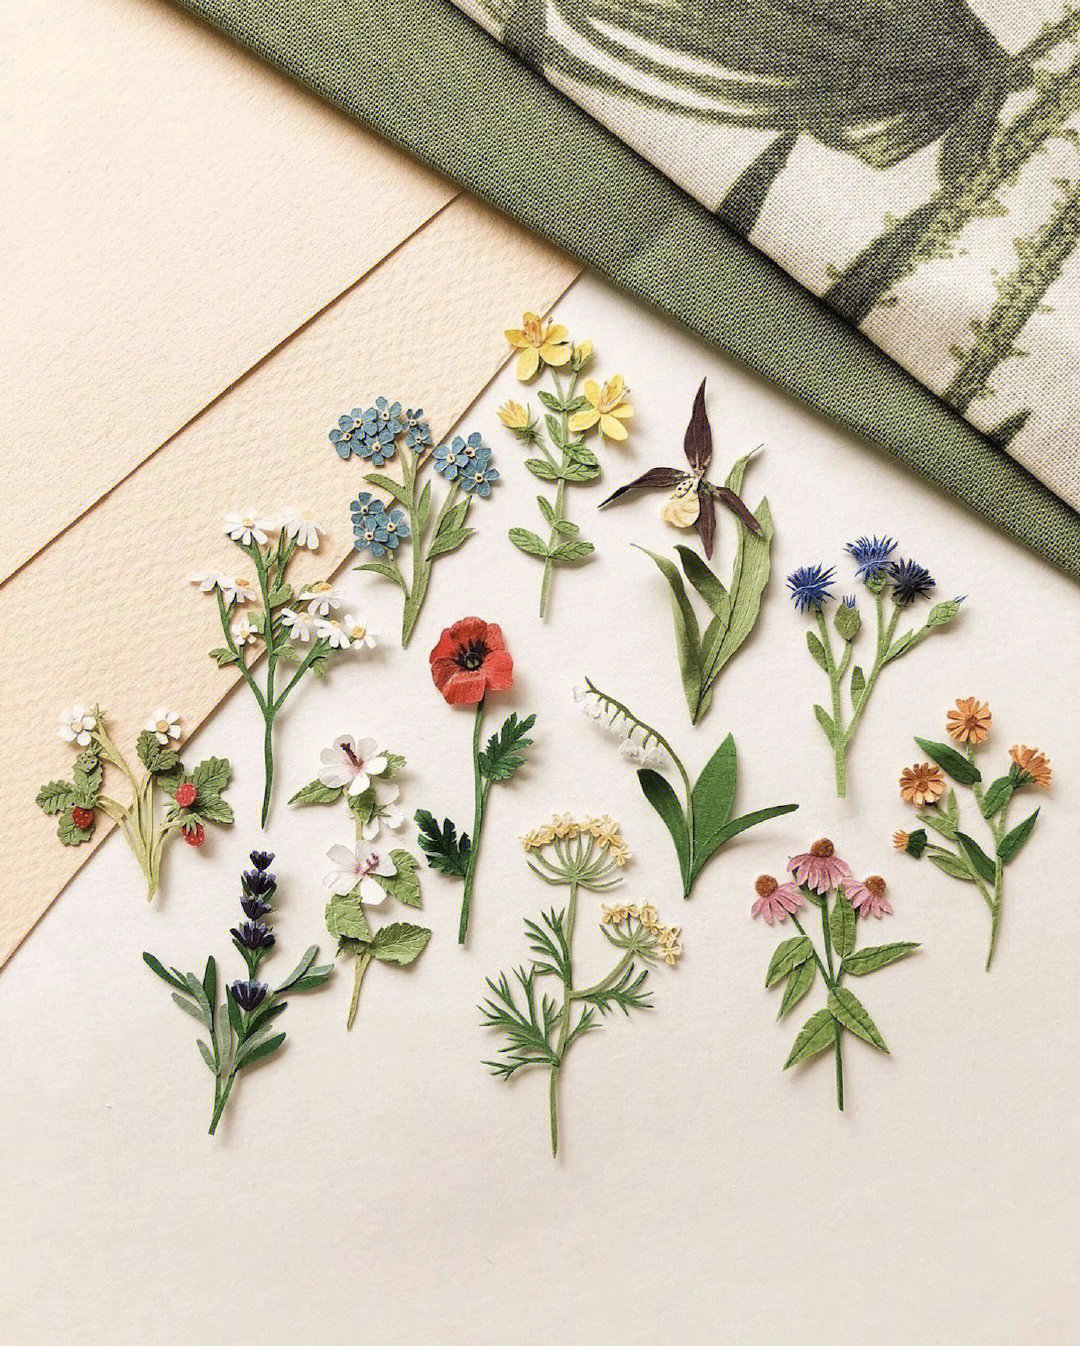 纸雕花卉的简单方法图片